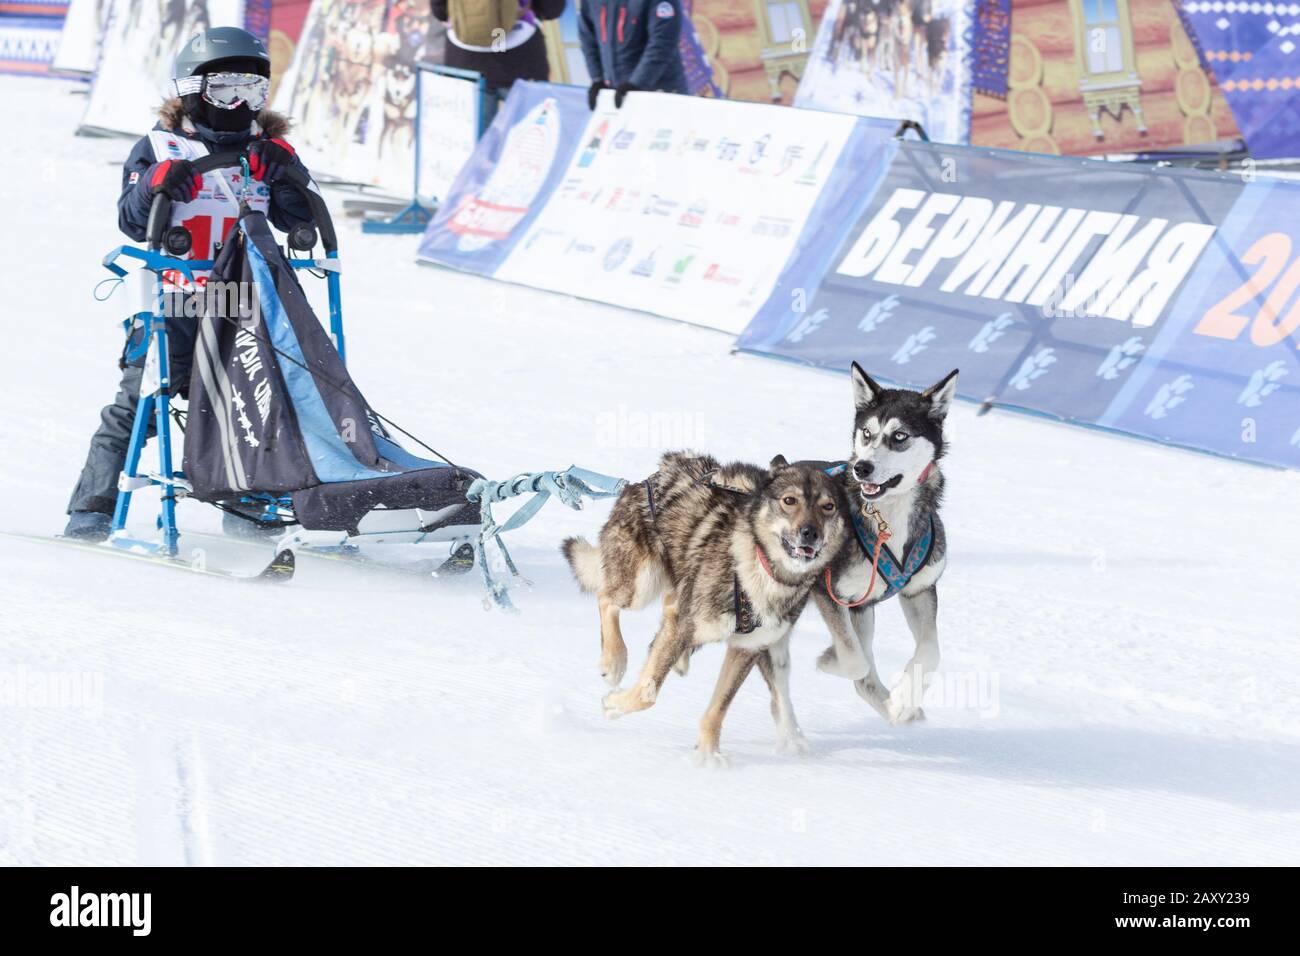 L'équipe de chiens de traîneau à chiens, qui s'exécute sur une distance de course enneigée pendant les concours pour enfants Kamchatka Sledge Dog Race Dyulin (Beringia). Petropavlovsk City, Ka Banque D'Images